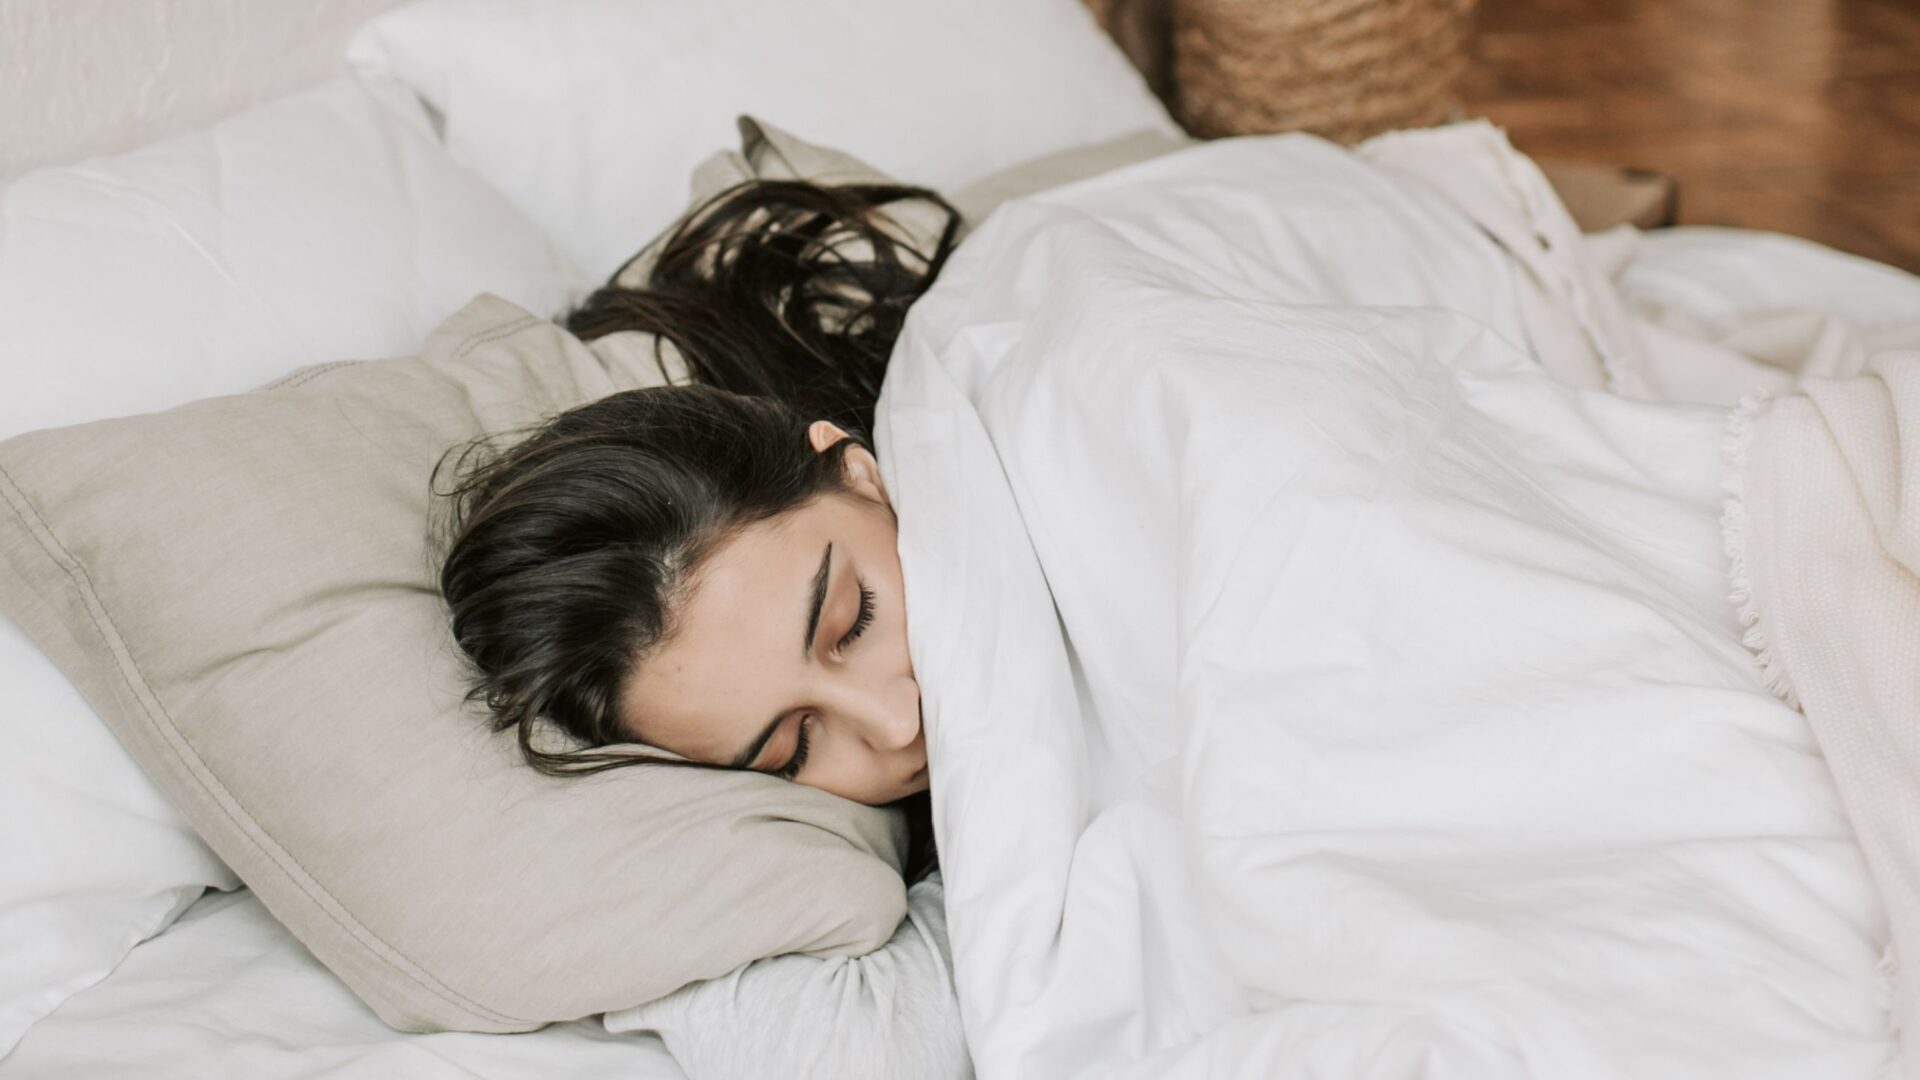 helpt een verzwaringsdeken om beter te slapen?